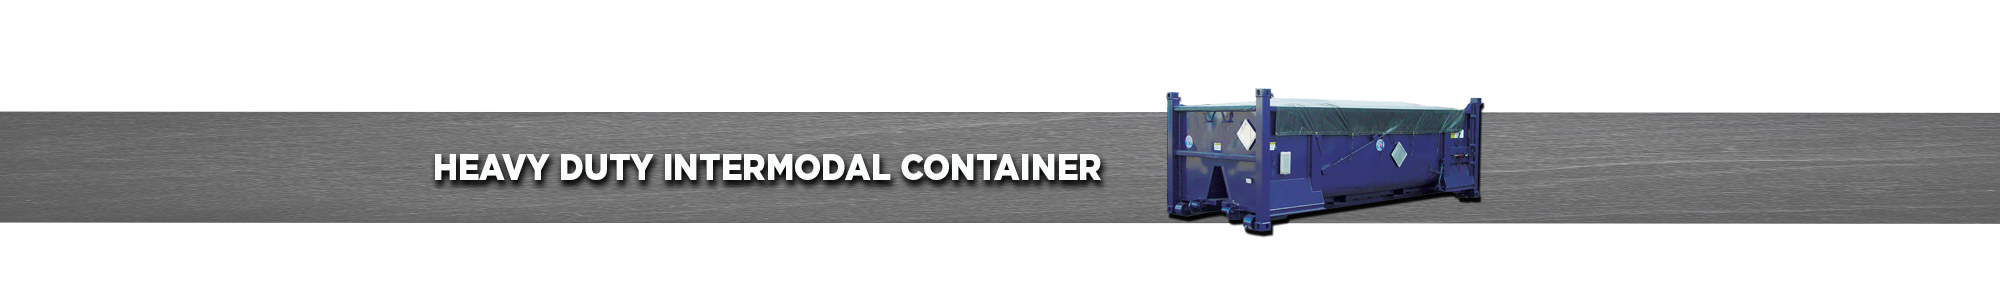 Heavy-Duty Intermodal Container